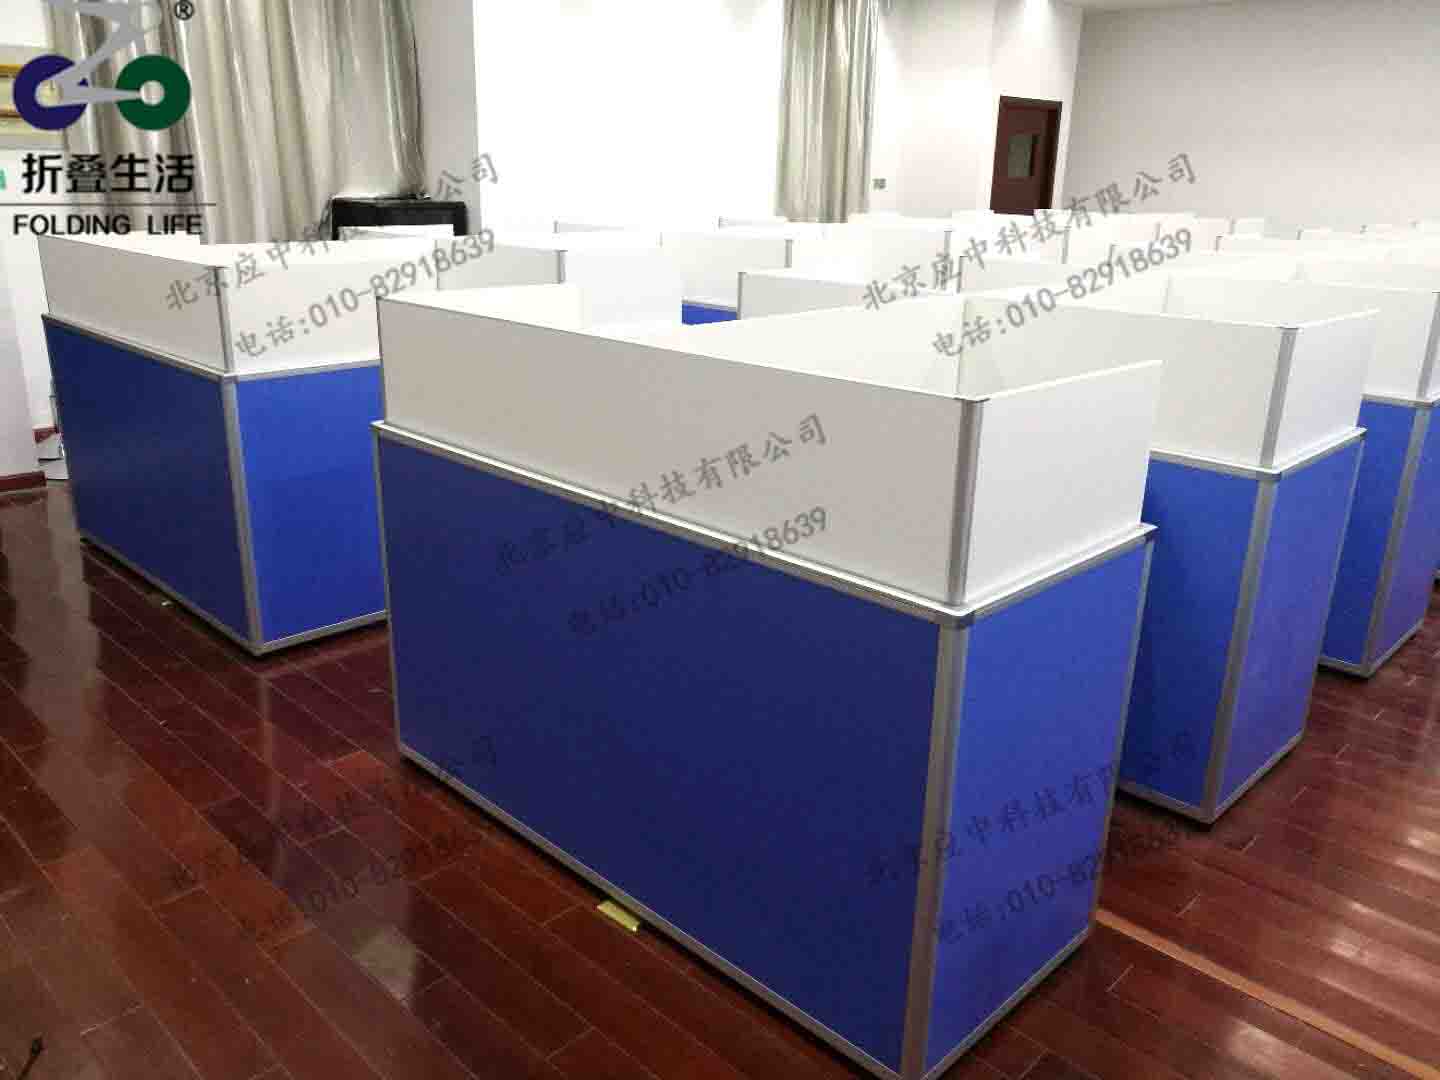 上海闵行科技高级中学升降屏风电脑桌 河南应中科技